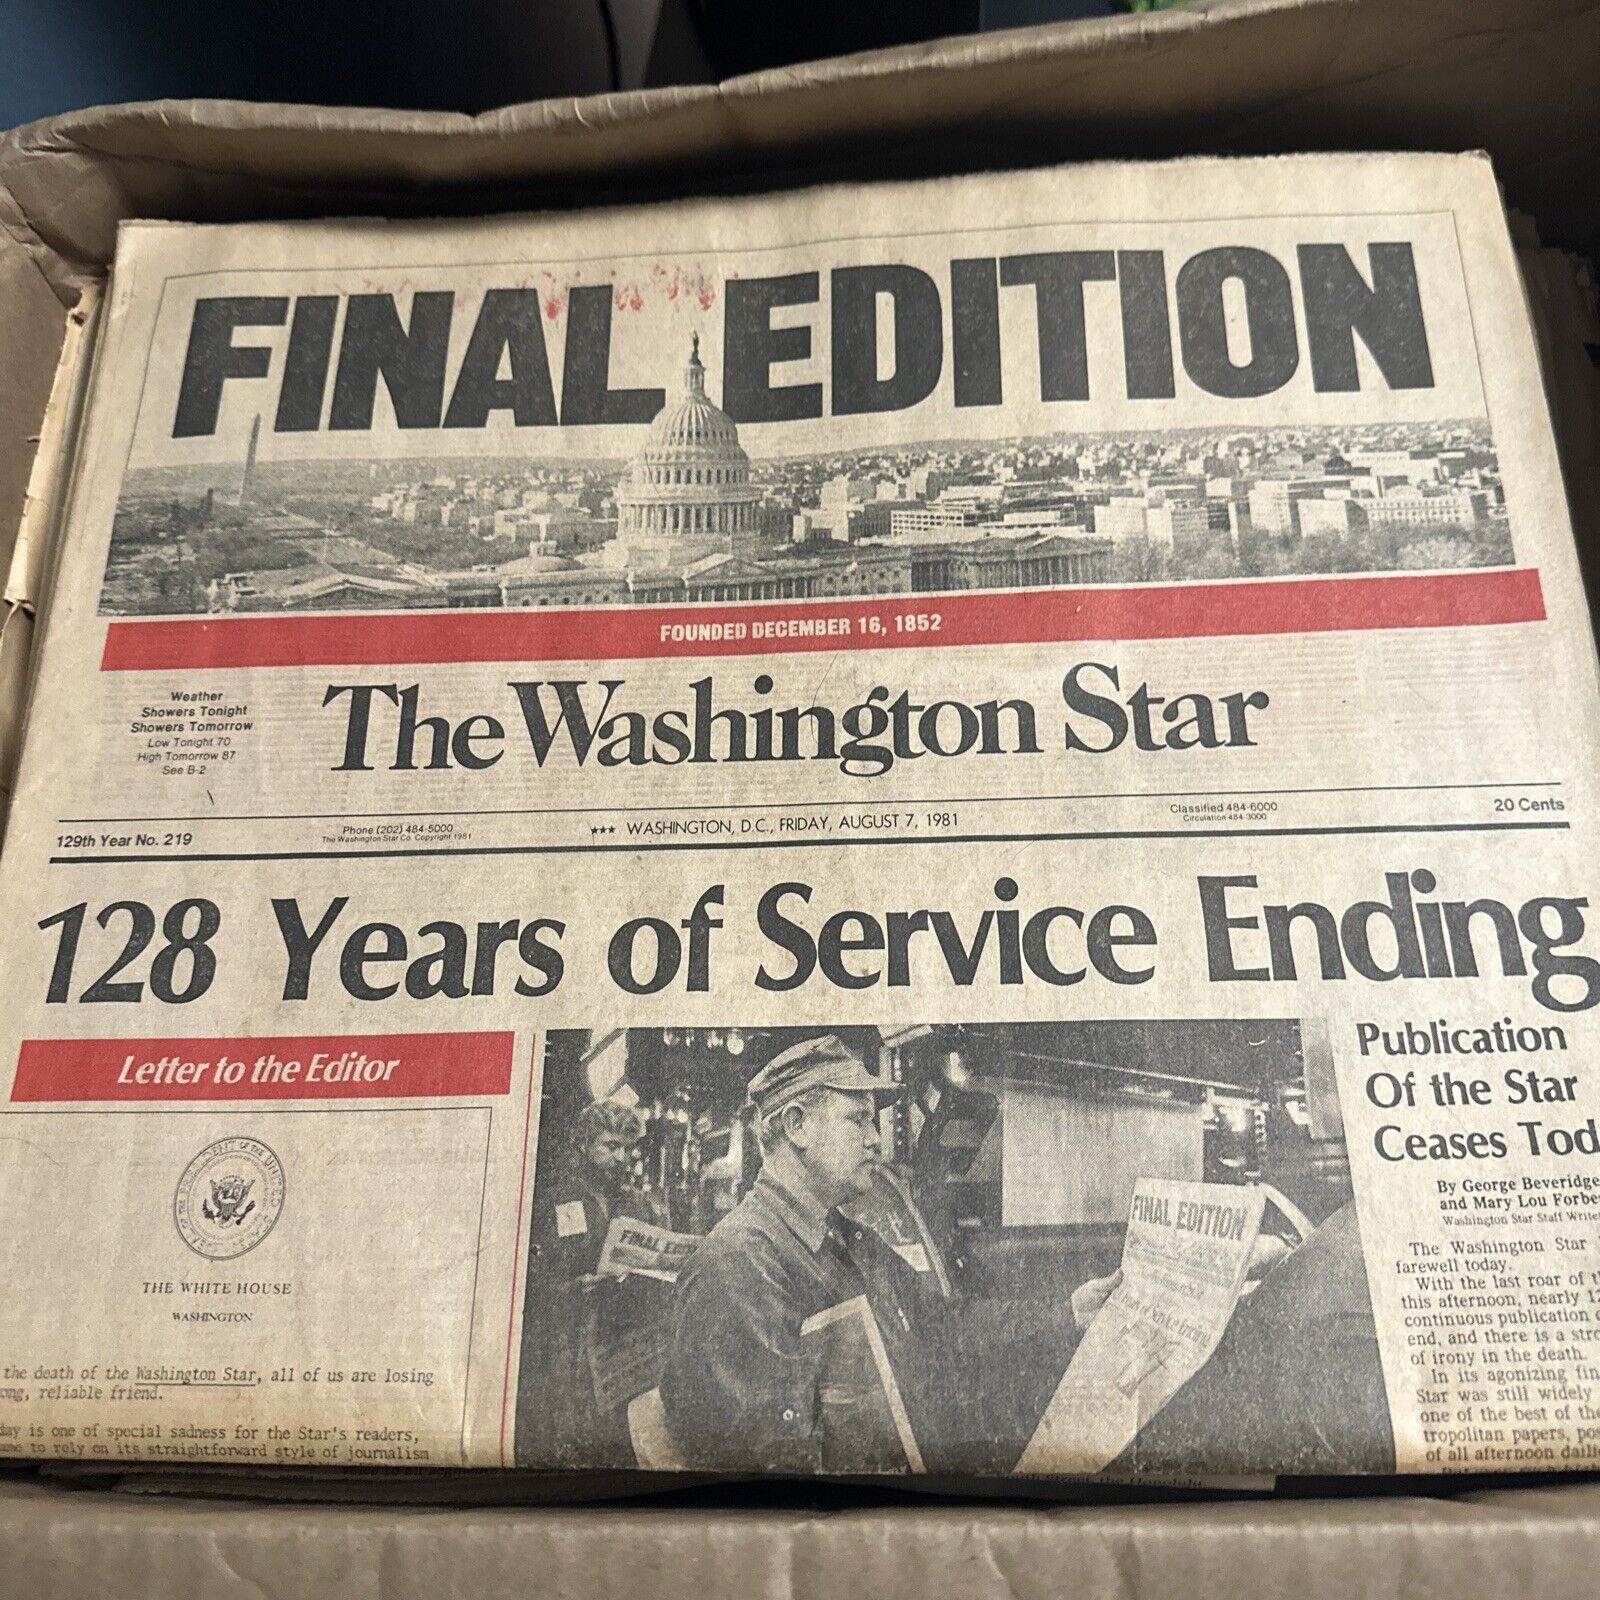 The Washington Star final edition